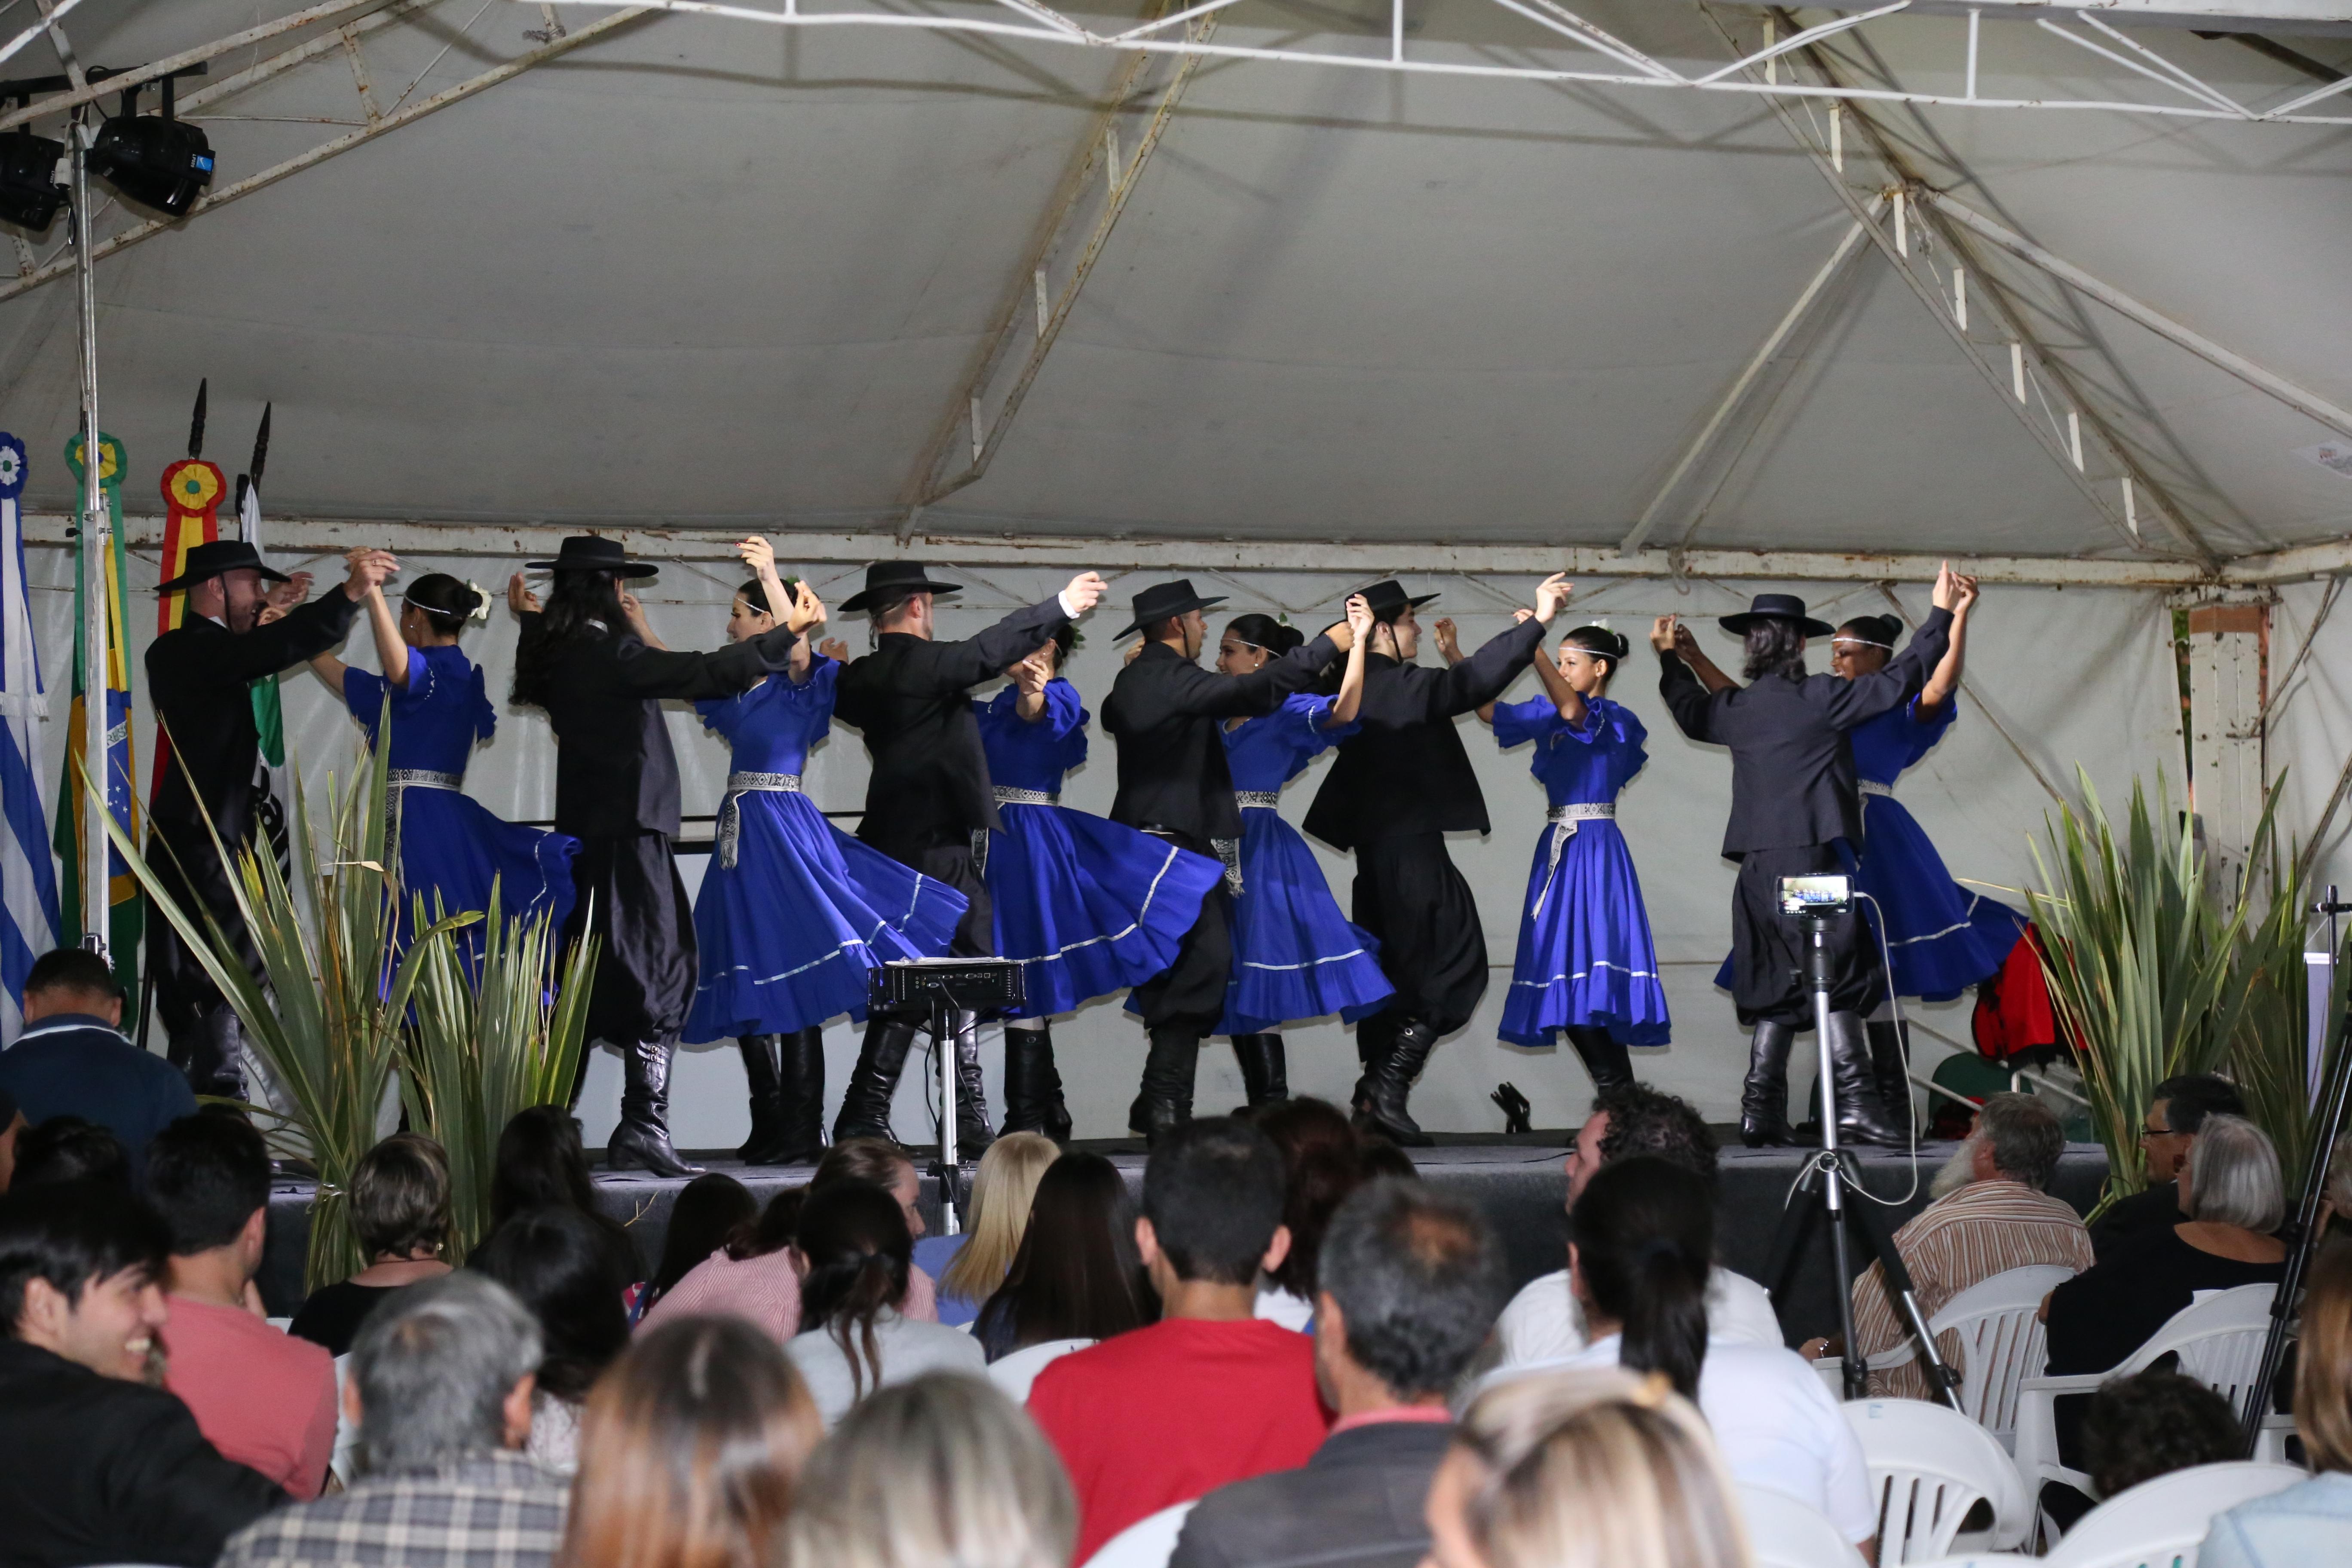 Seis casais dançando no palco usando trajes gaúchos, com cores azul e preto. Público a frente assistindo. 